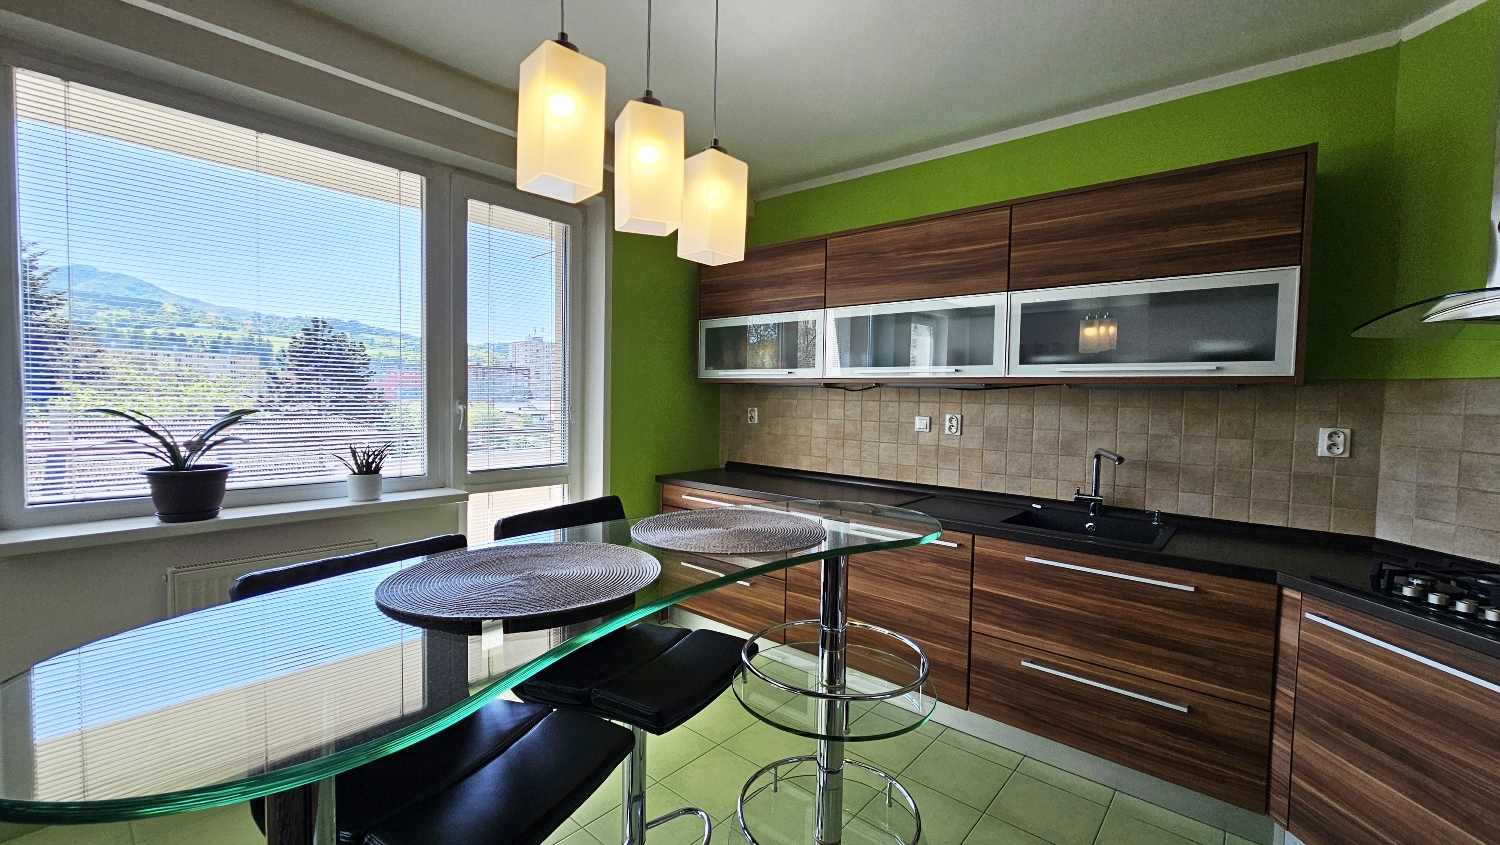 EXKLUZÍVNE! Veľký vkusný 3-izbový byt, balkón, výborná poloha, predaj, Kysucké Nové Mesto, Cena: 154.900 €